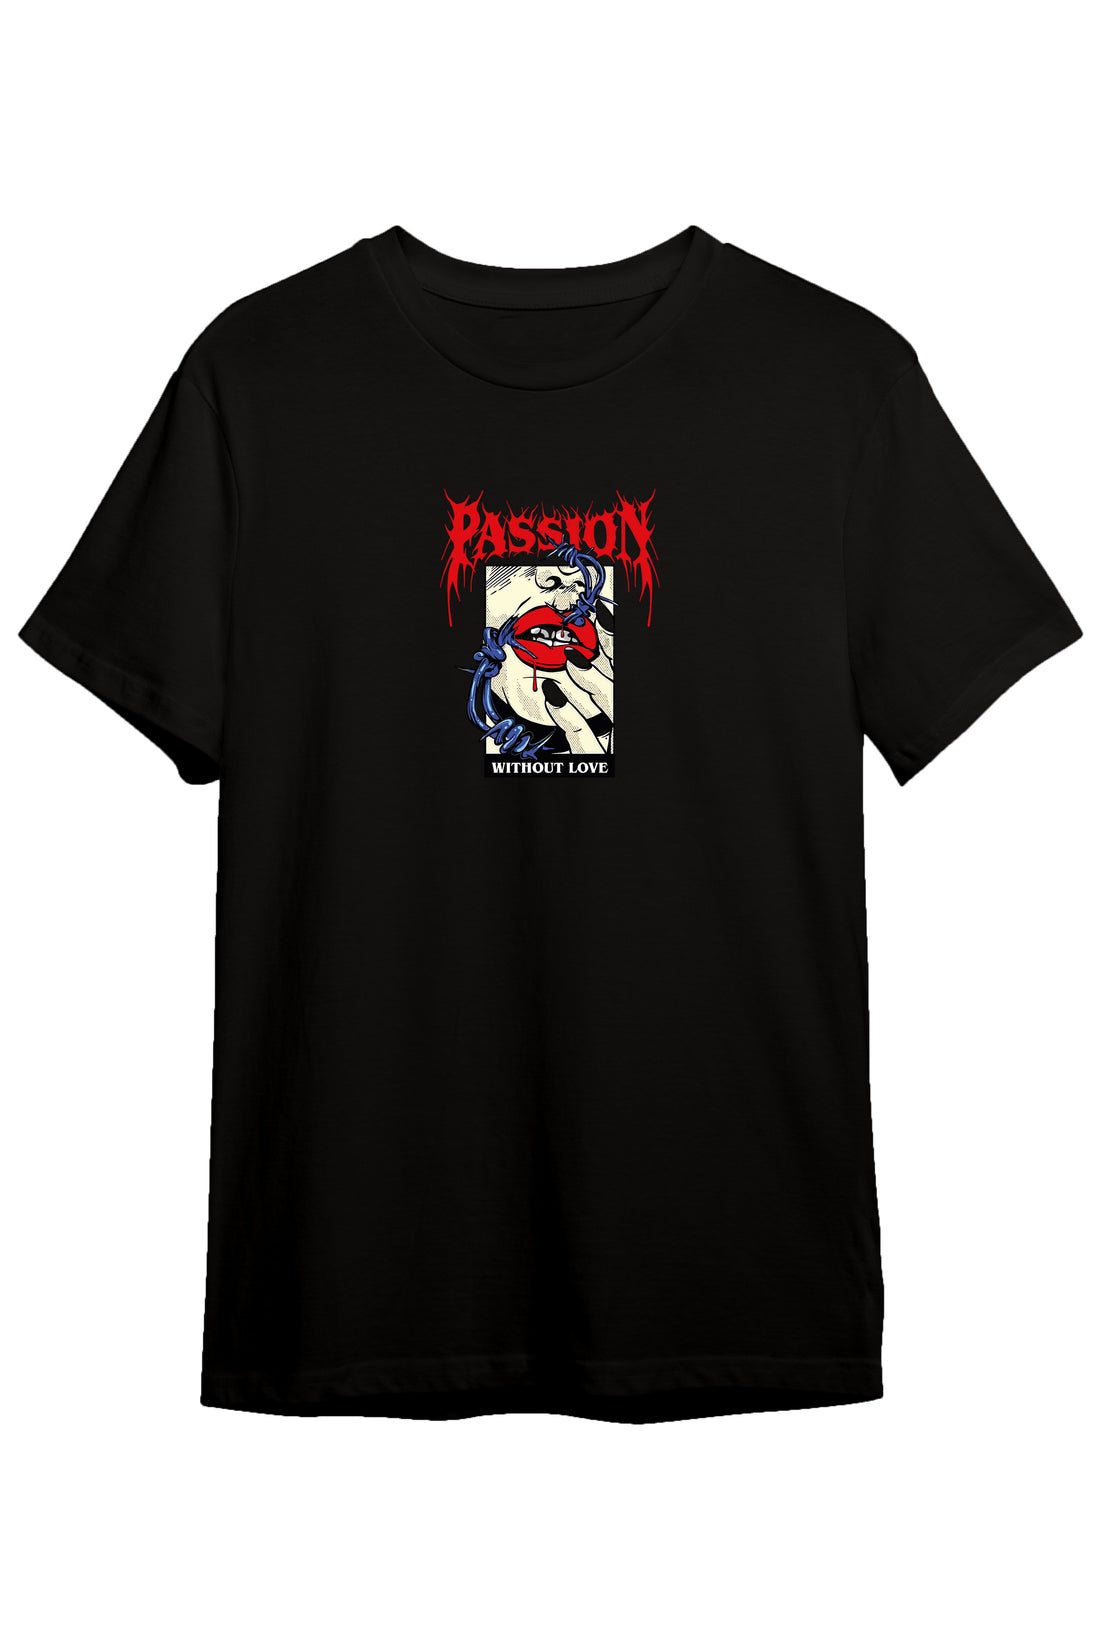 Passion - Regular Tshirt